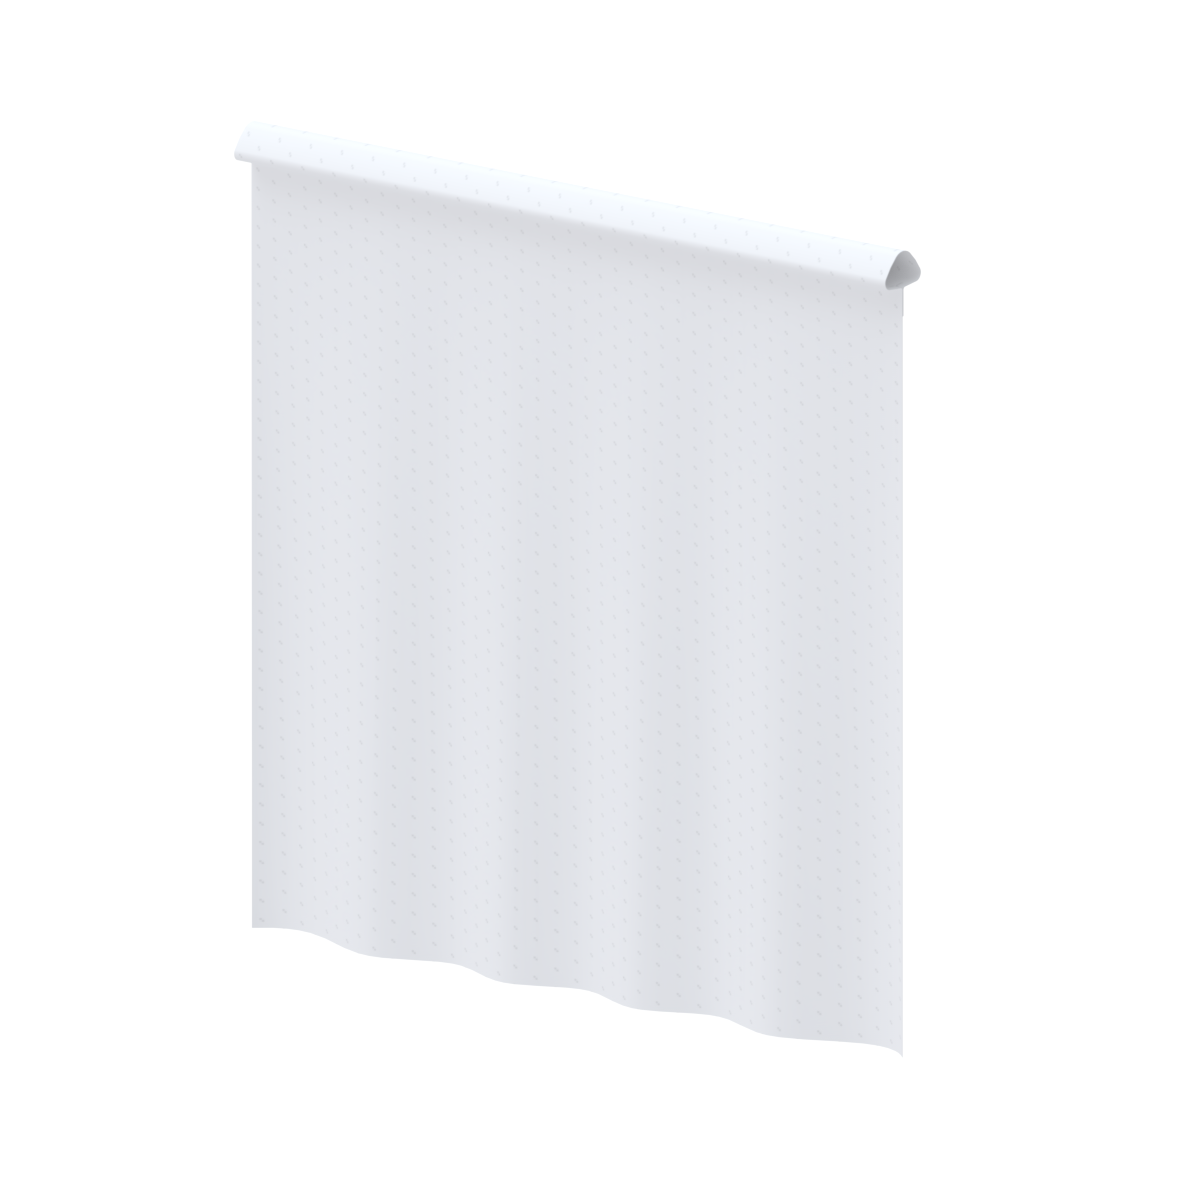 Care Rideau anti-éclaboussure, pour Cavere, 605 x 715 x 1 mm, Blanc